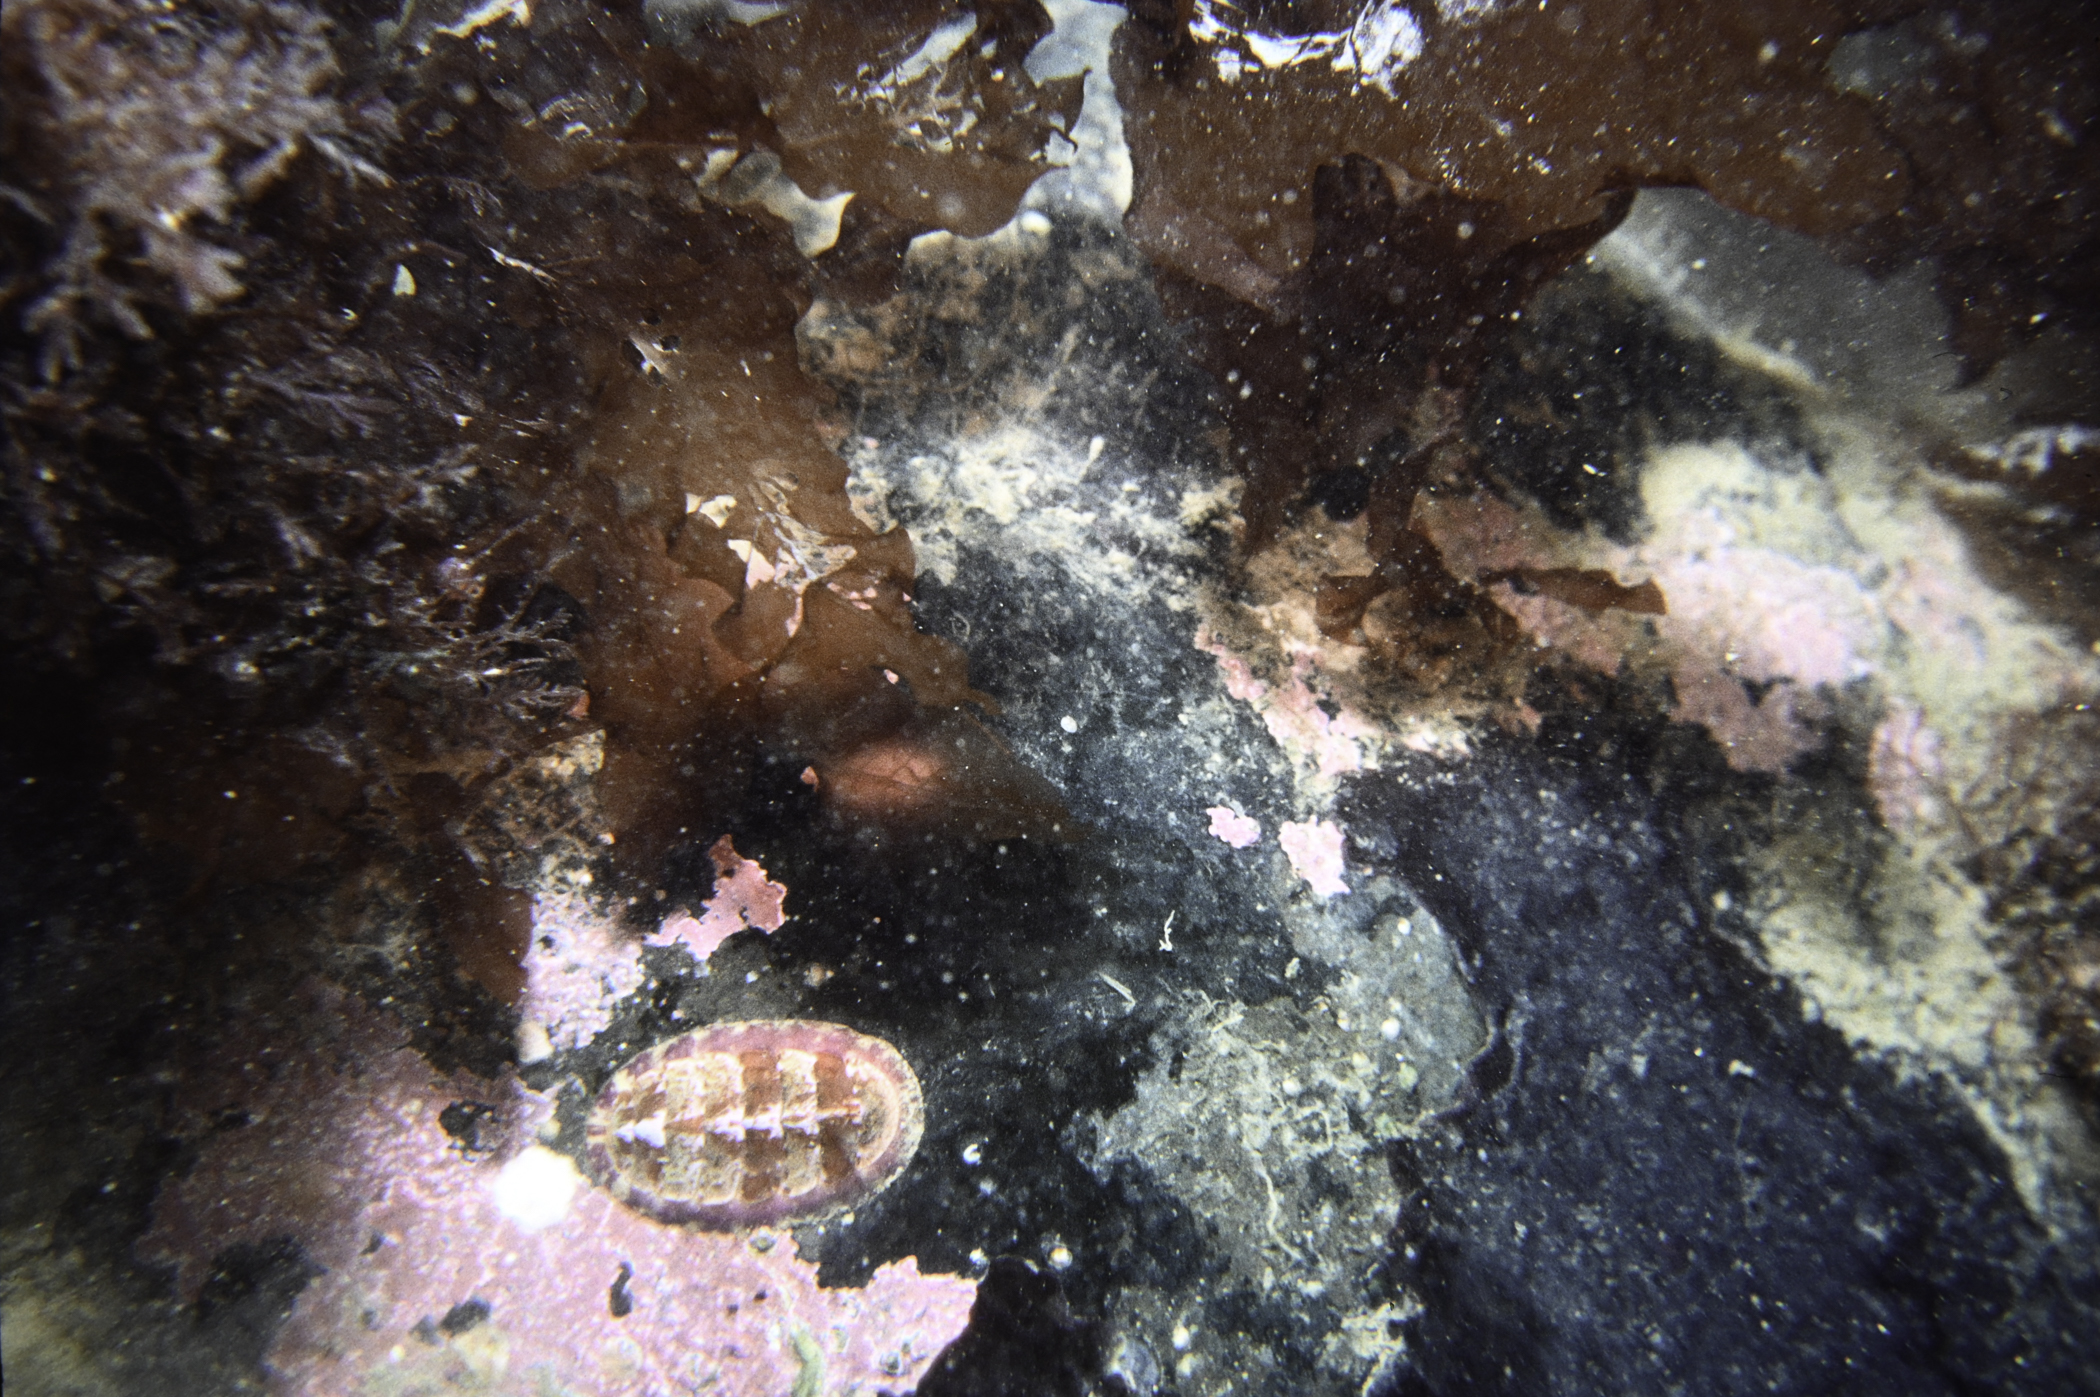 Tonicella marmorea, Delesseria sanguinea. Site: Whitehead, Belfast Lough. 